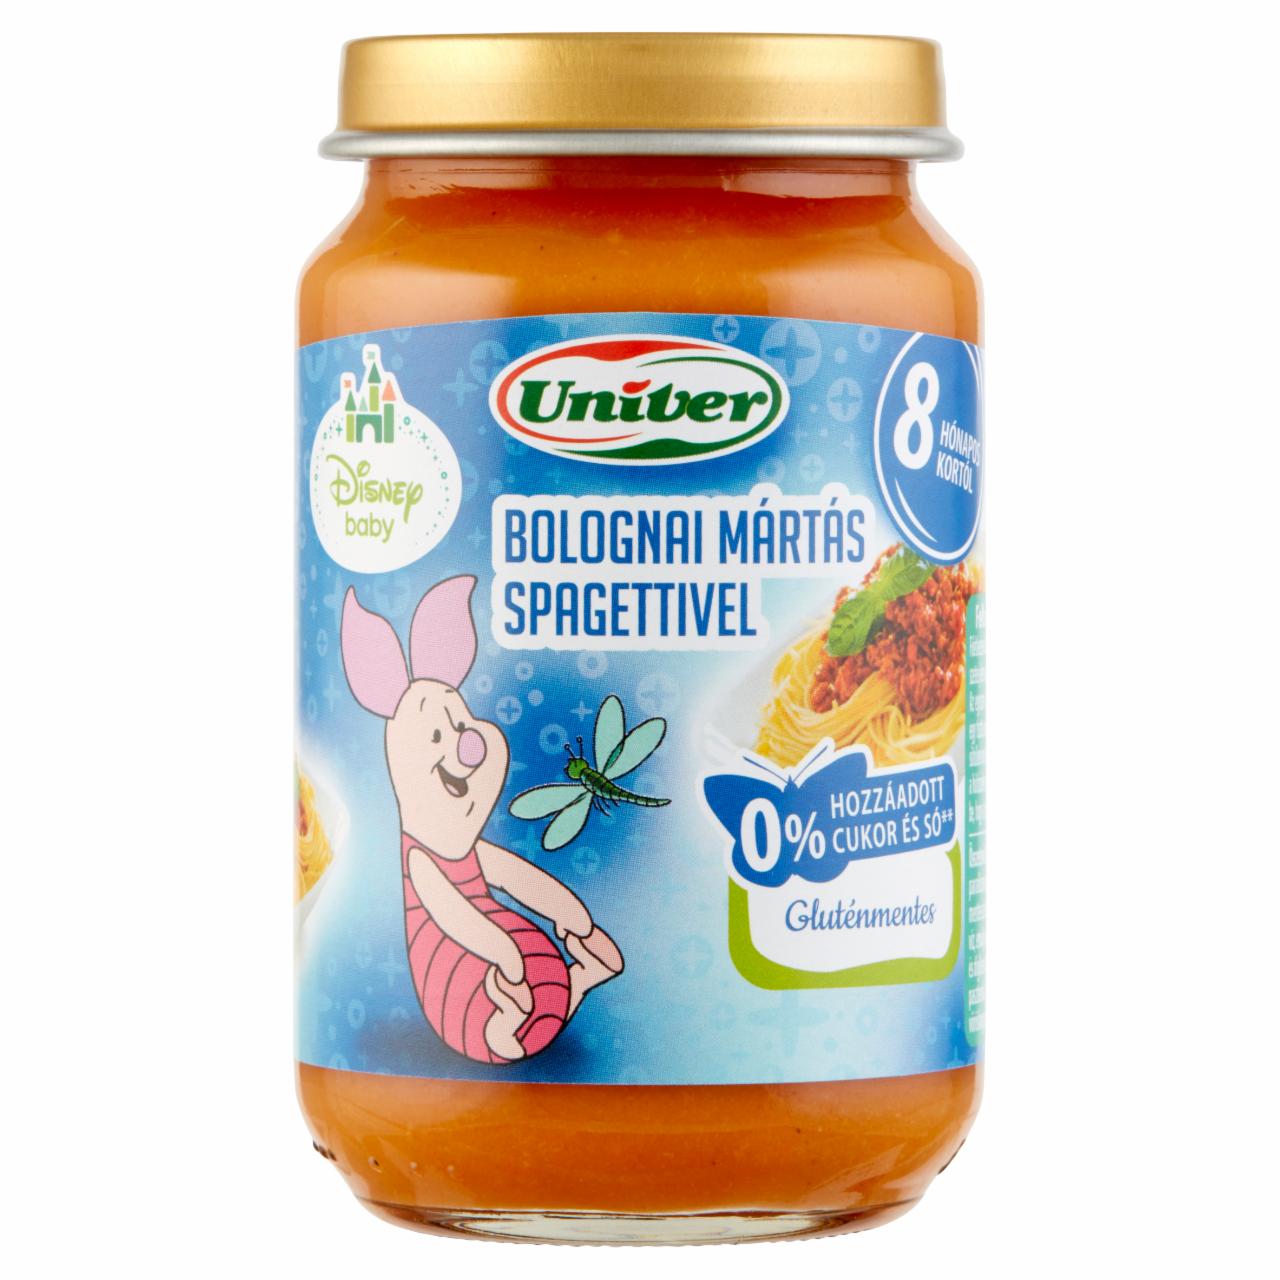 Képek - Univer bolognai mártás spagettivel bébiétel 8 hónapos kortól 163 g